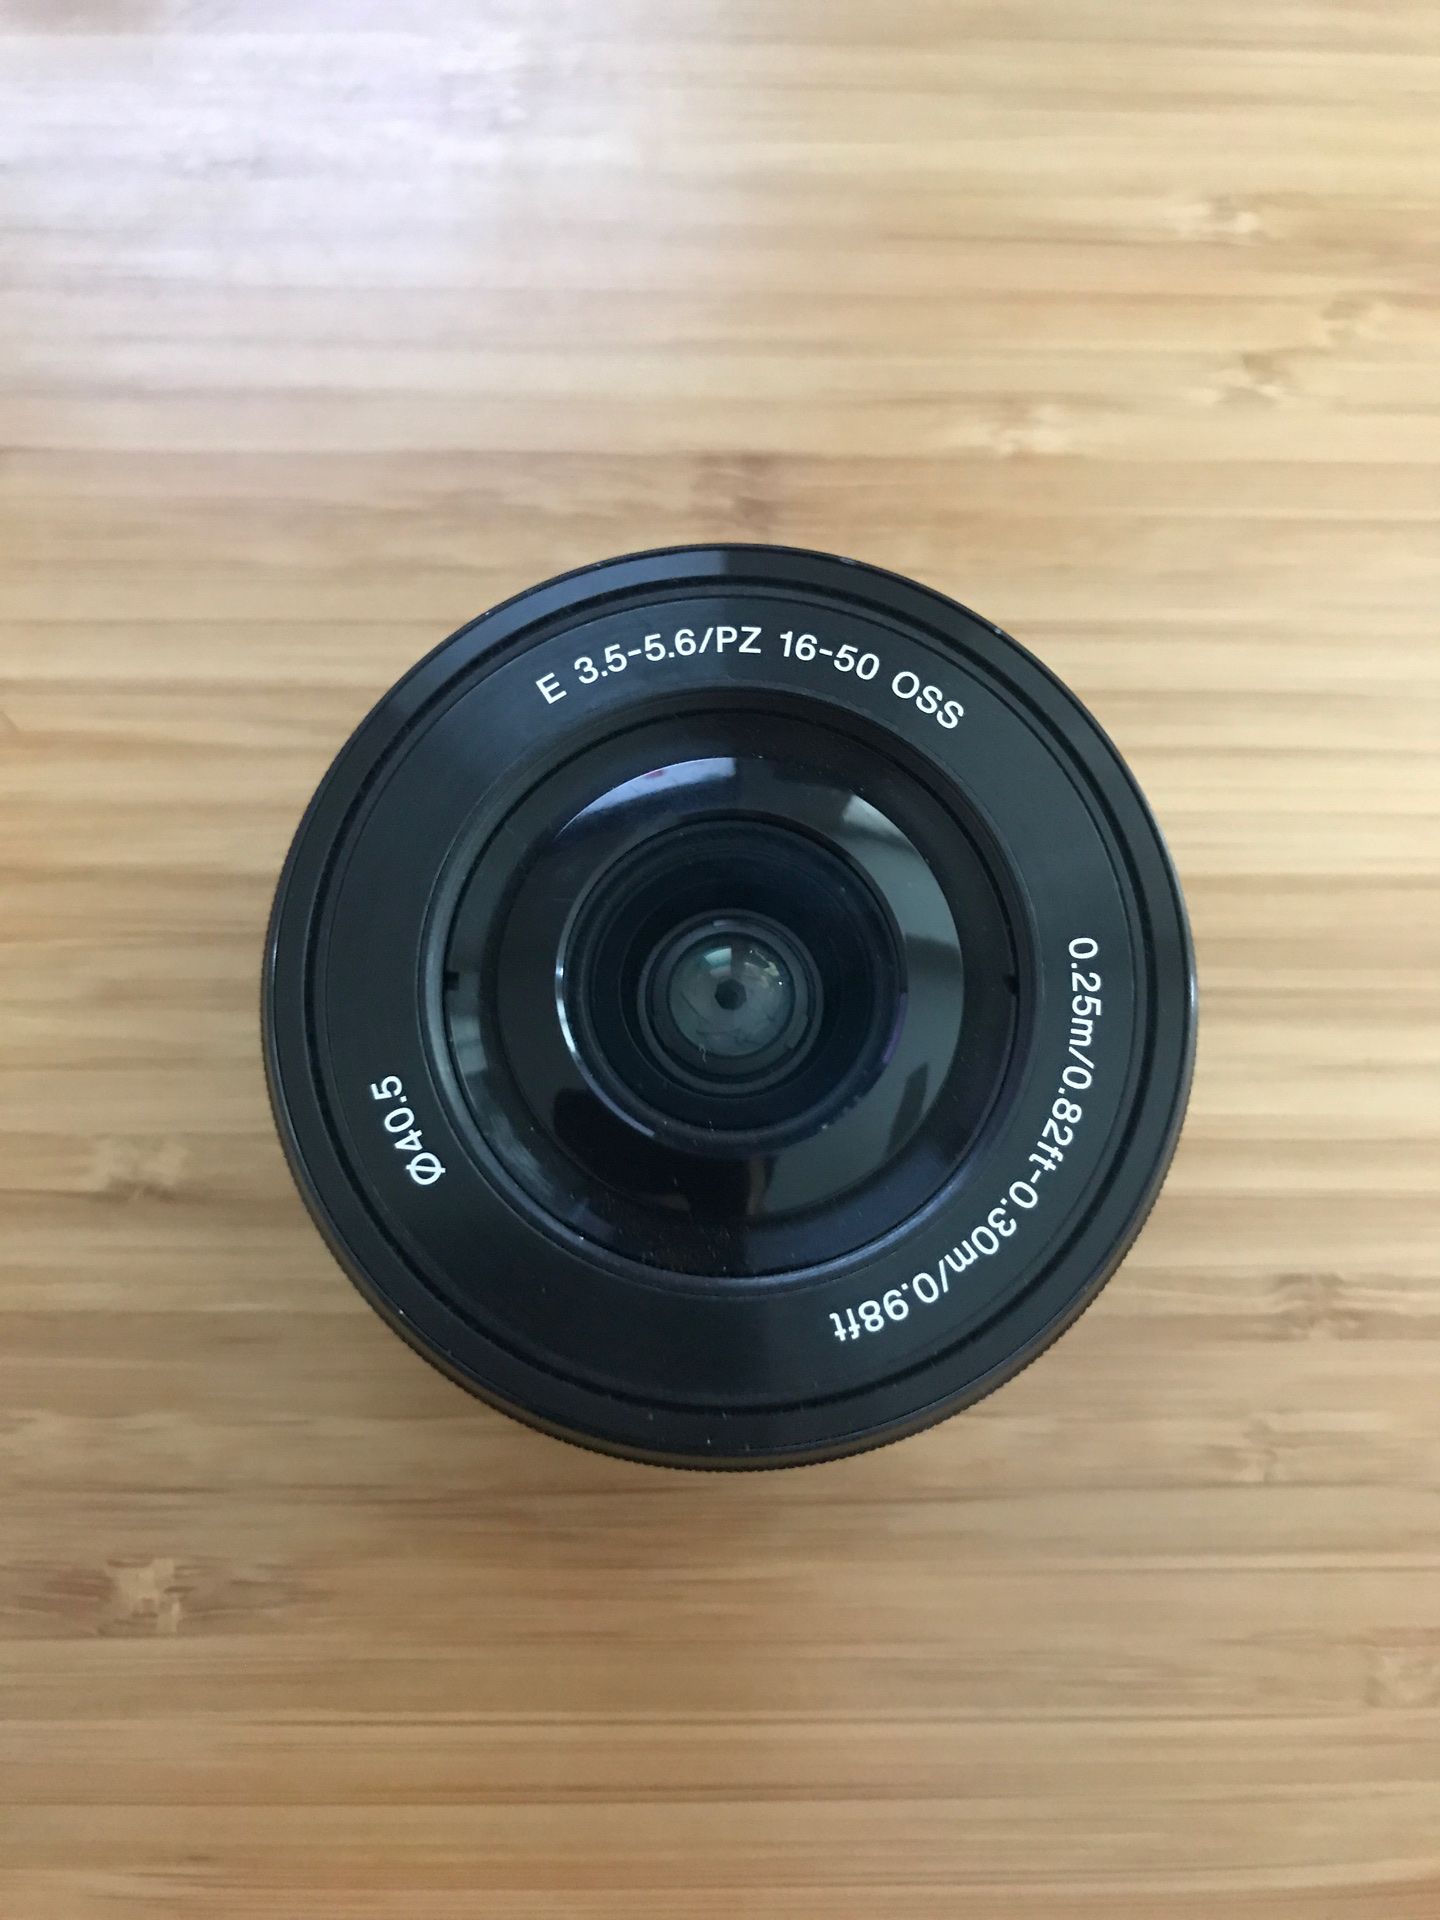 Sony e mount 16-50mm lens